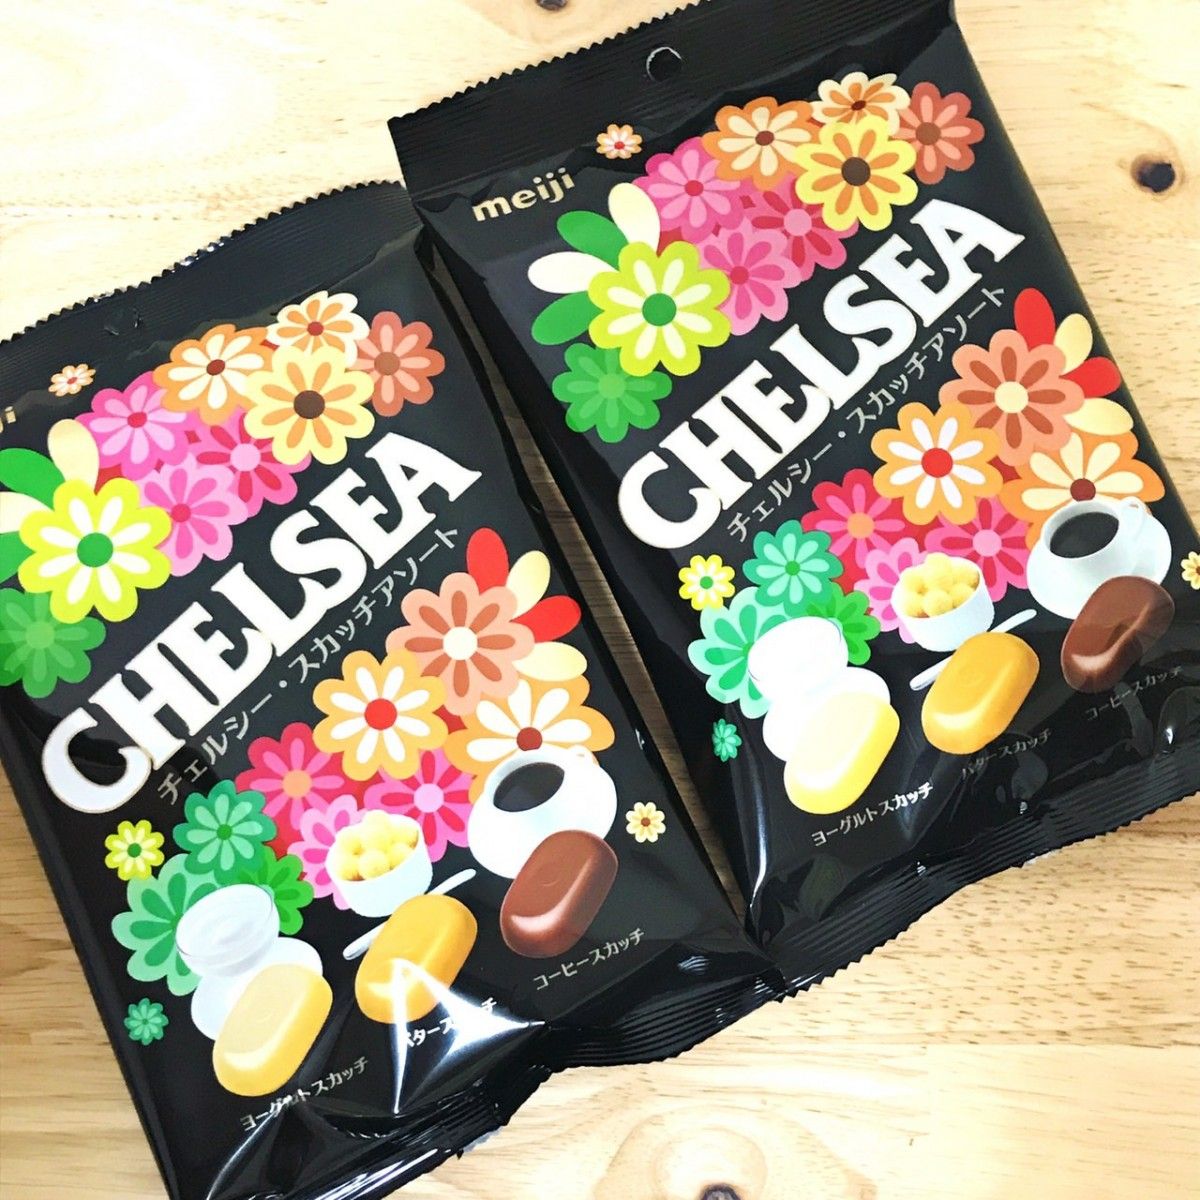 チェルシー 飴 アソート袋 ヨーグルト バター コーヒー明治 CHELSEA - 菓子